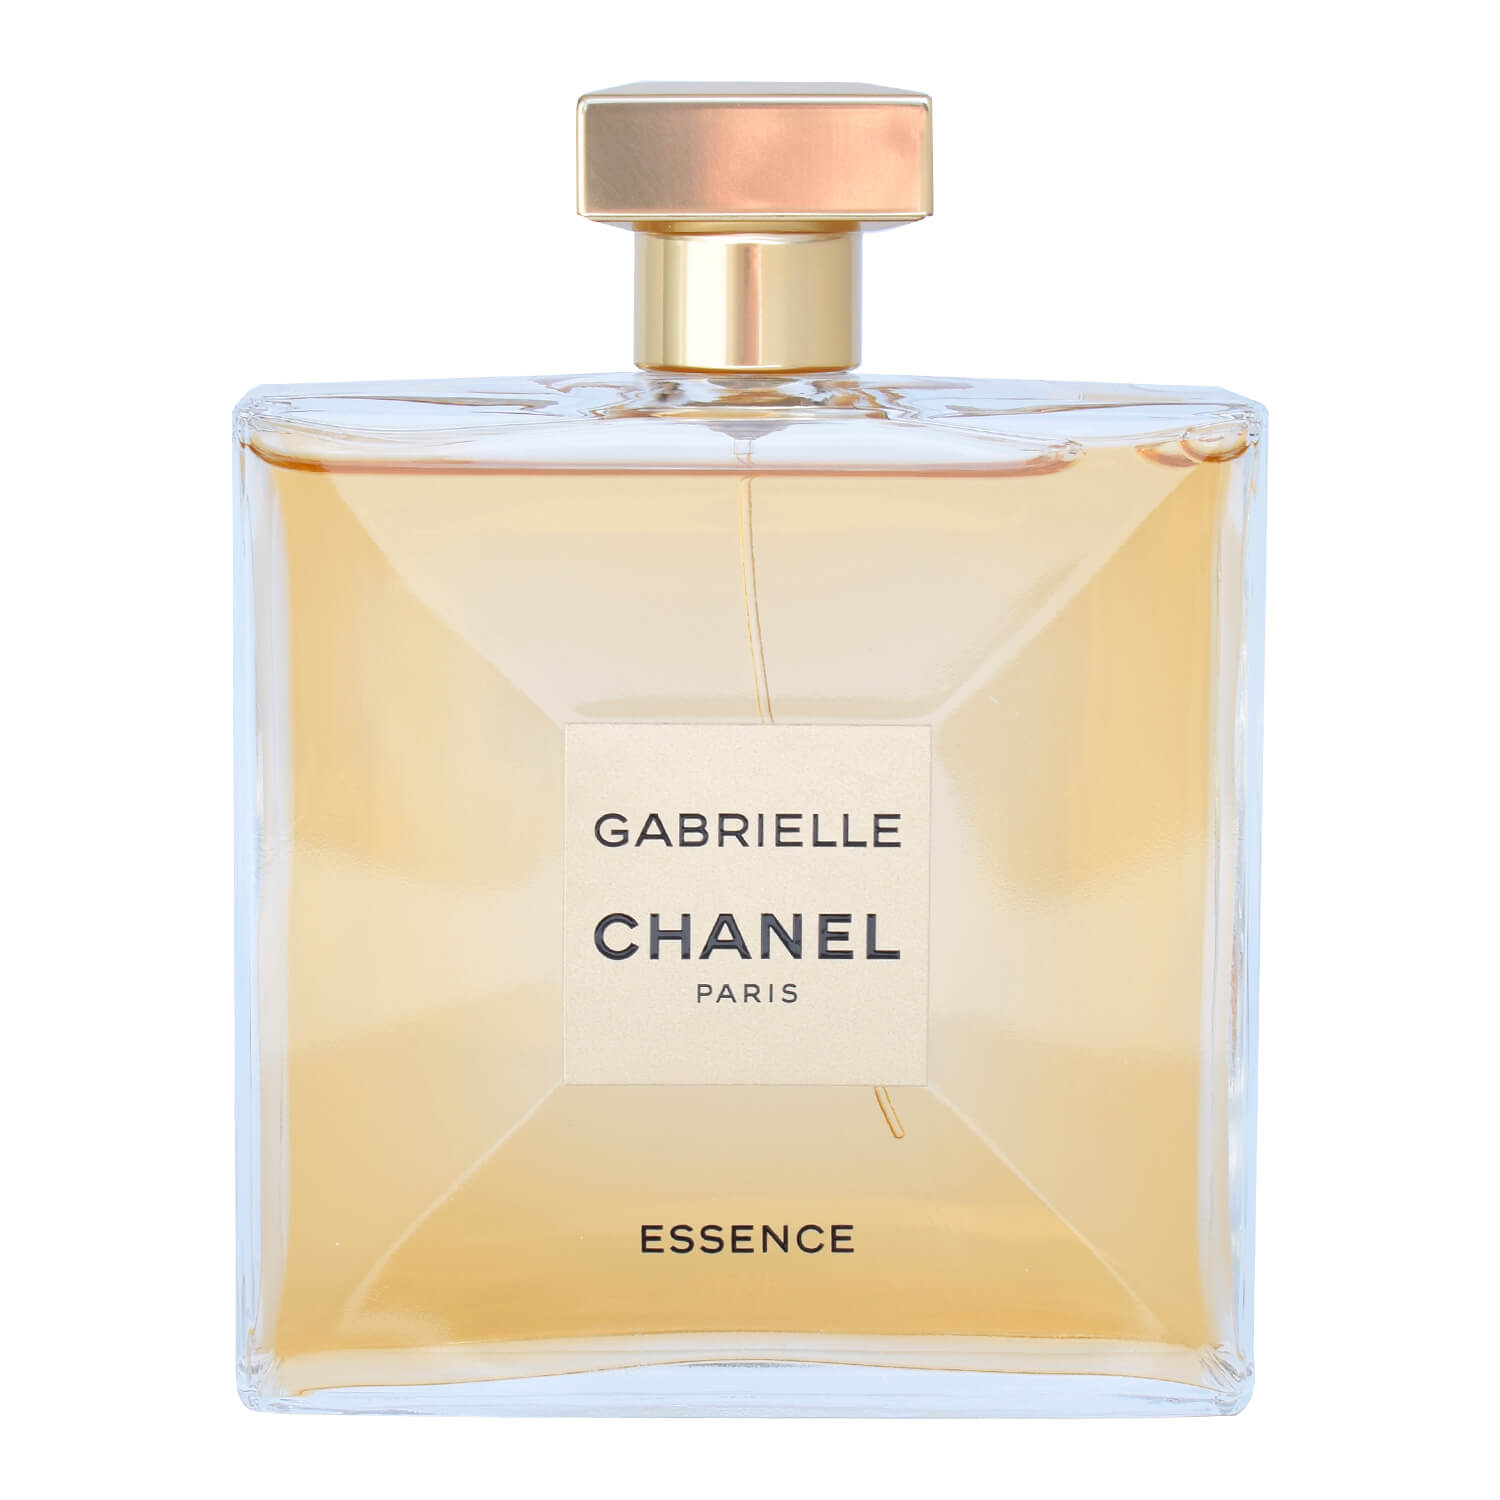 Parfum, Uhren & Schmuck bei  entdecken - Chanel Gabrielle Essence  Eau de Parfum 50 ml Damen Parfüm Duft Spray